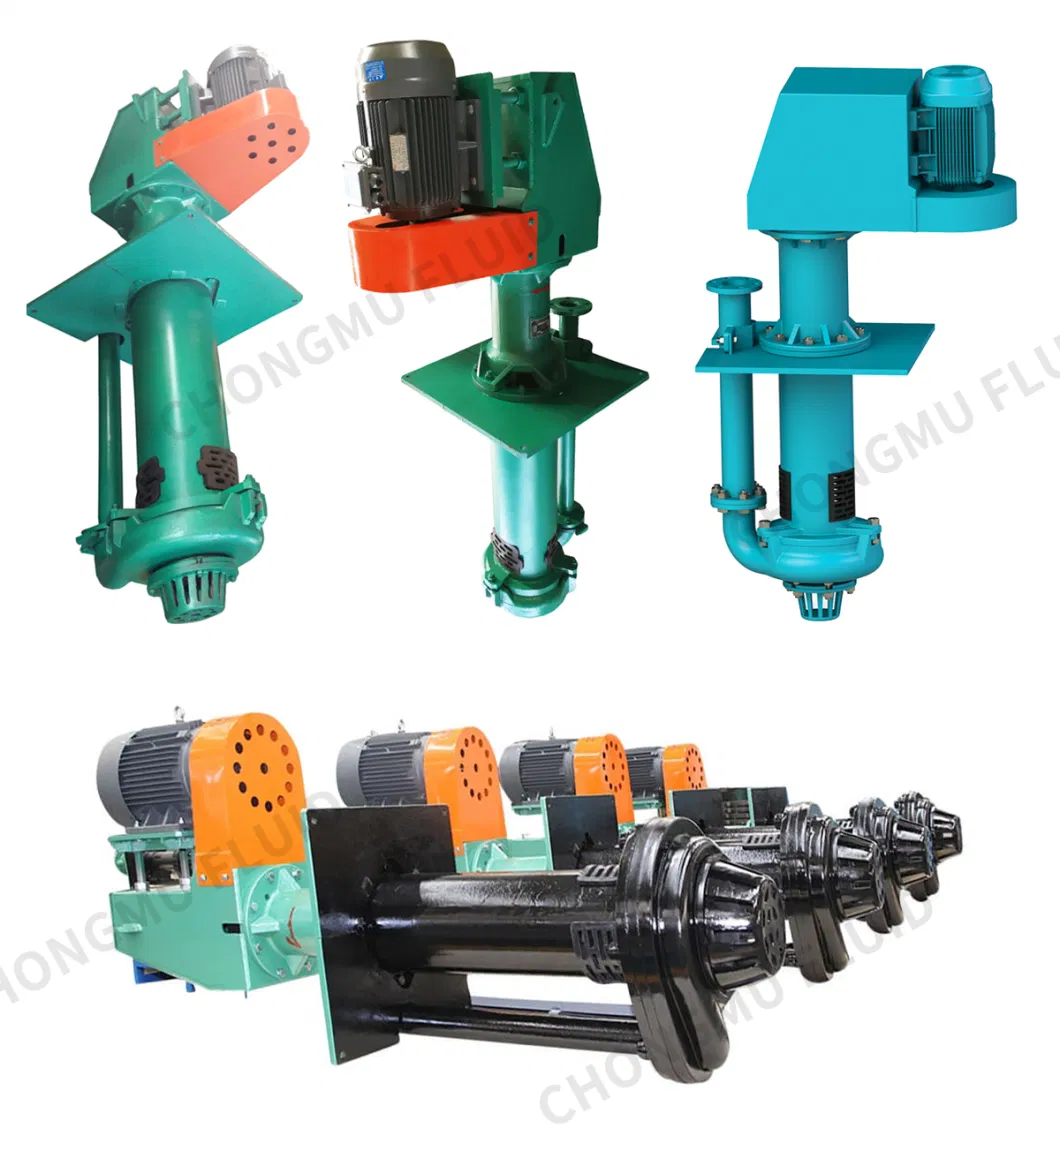 High Quality Horizontal Slurry Pumps, Gravel Pumps, Vertical Sump Slurry Pumps, Submersible Slurry Pumps